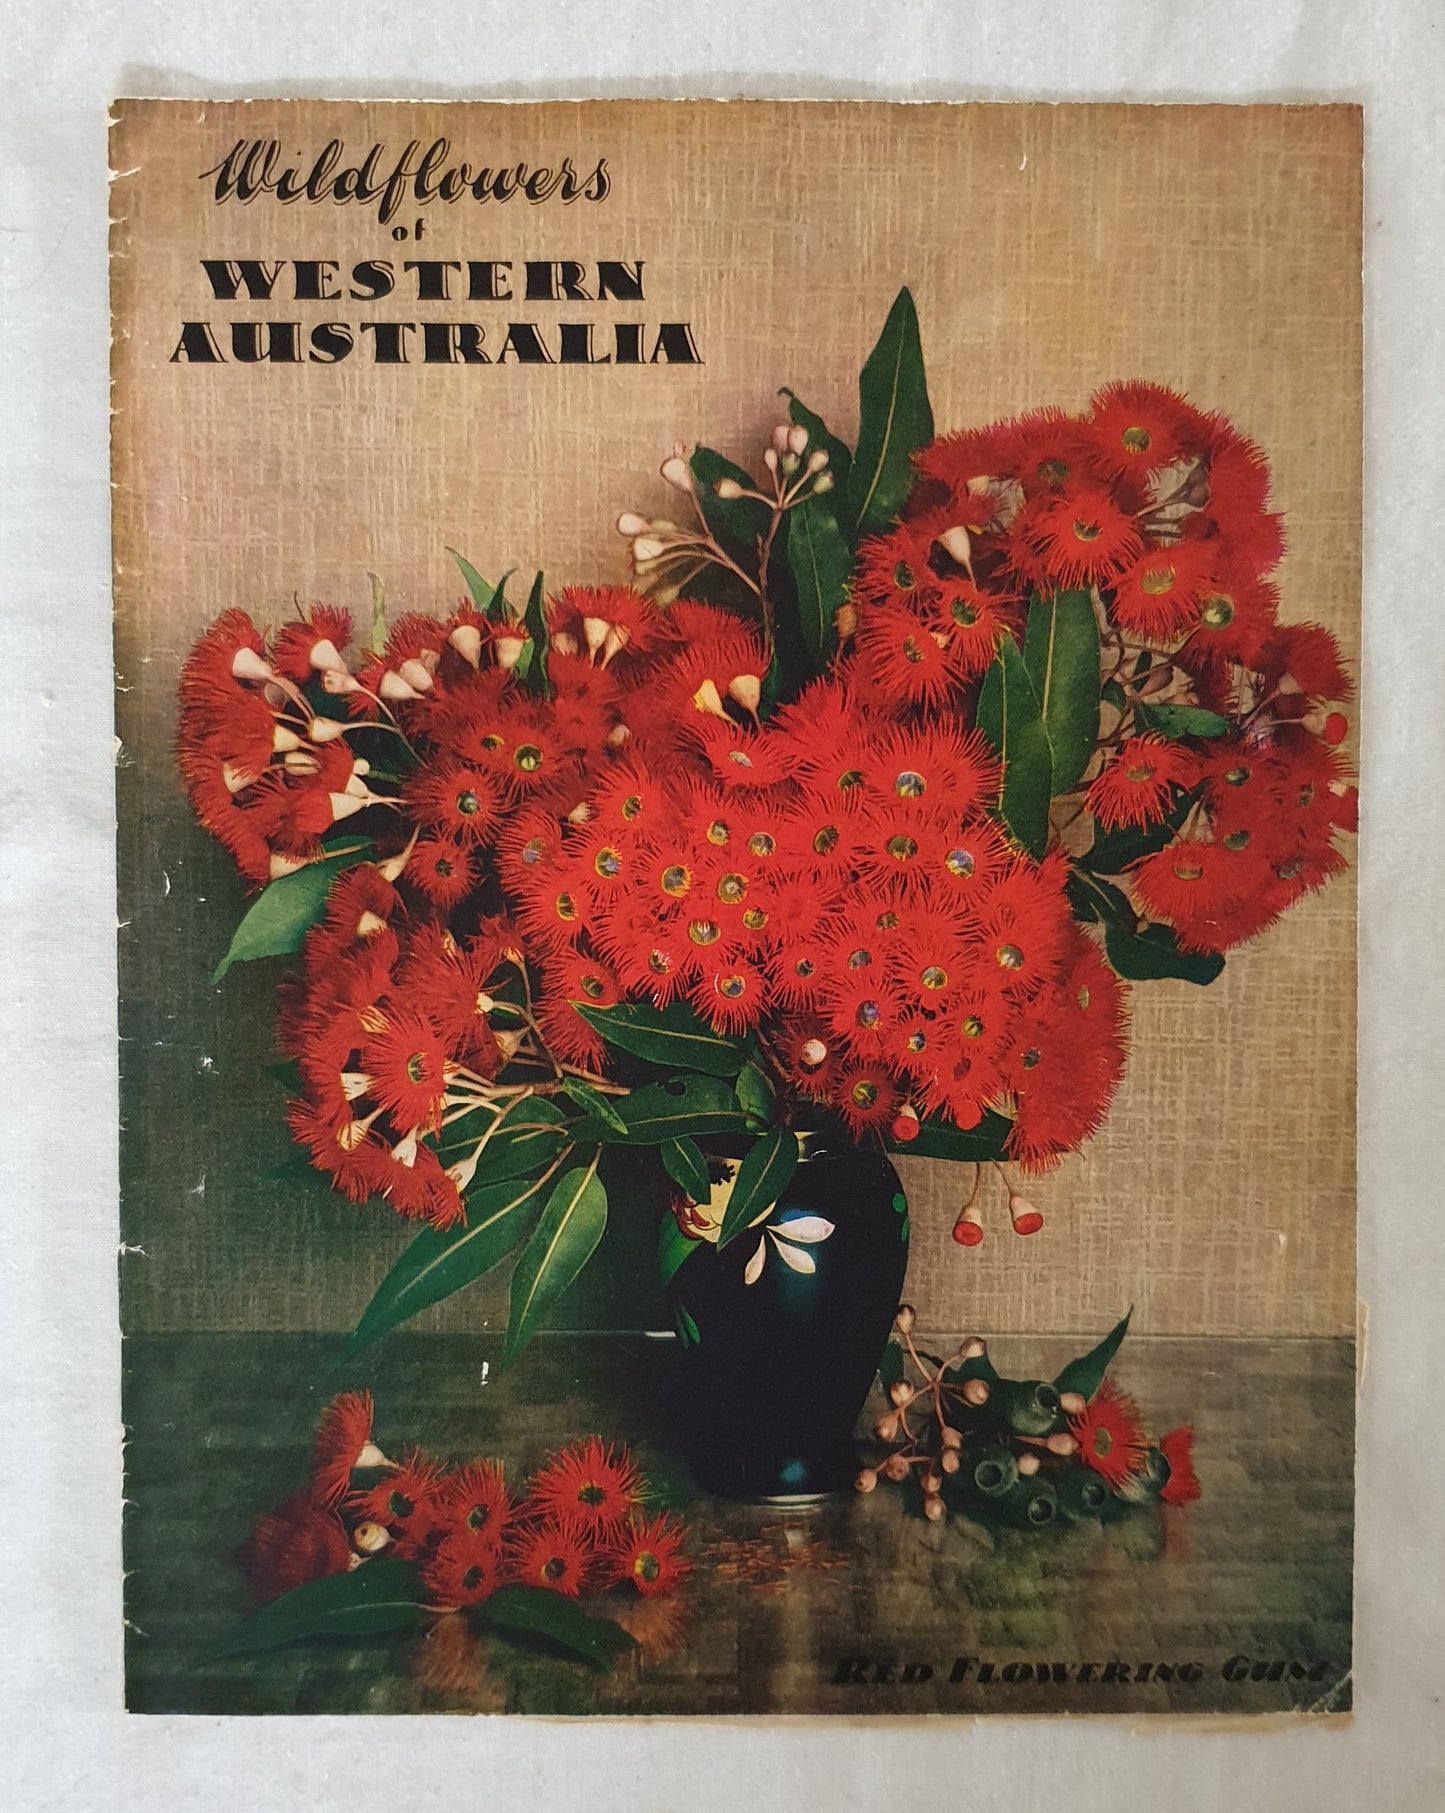 Wildflowers of Western Australia by C. A. Gardner